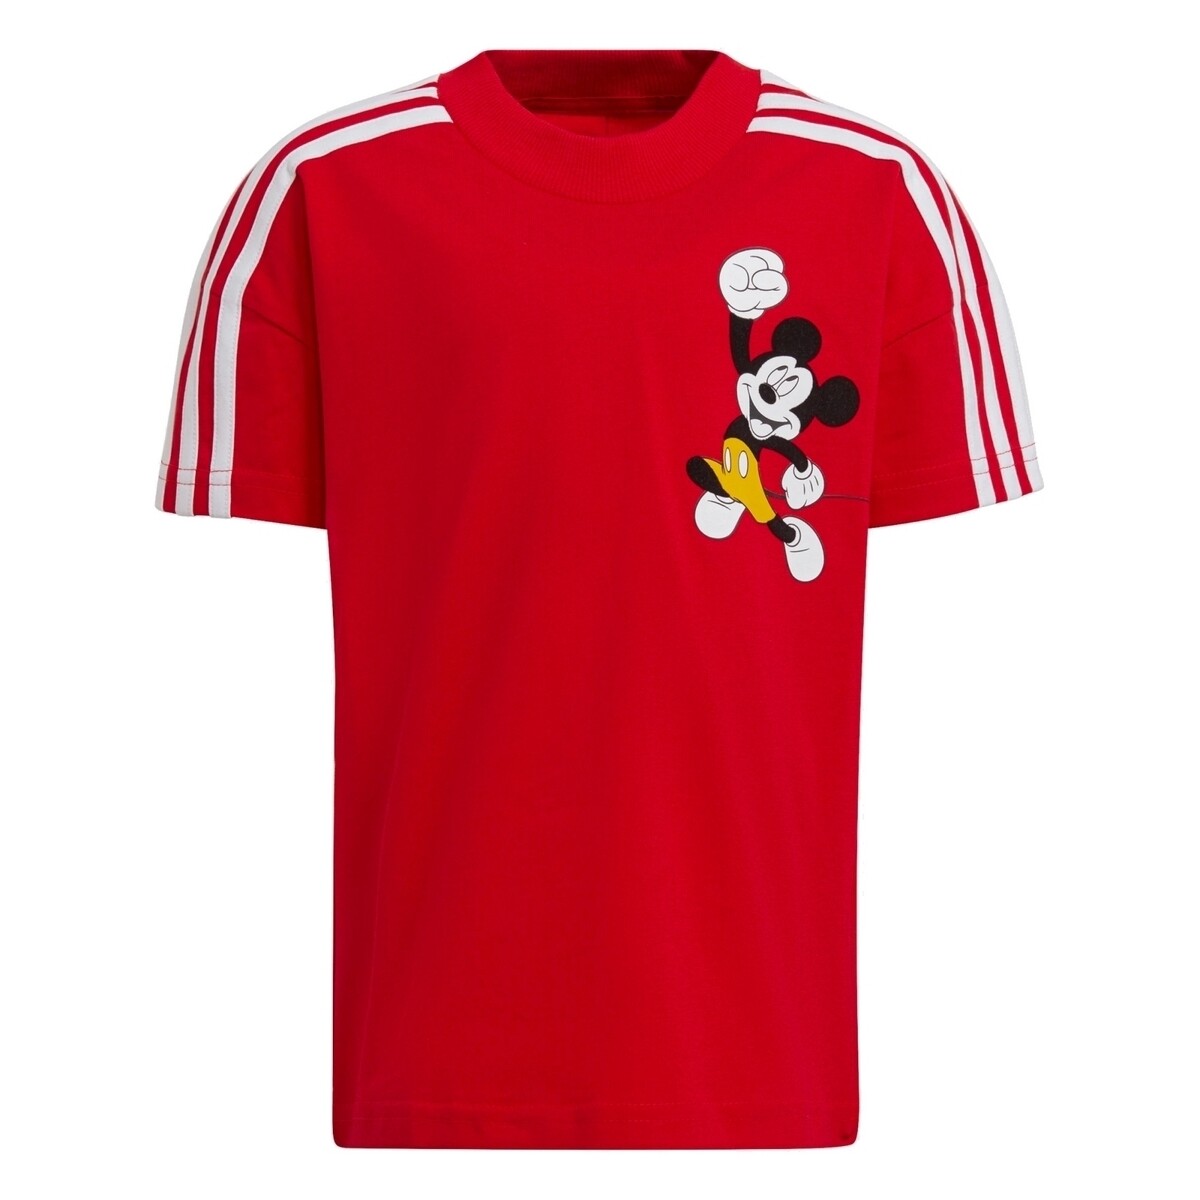 Vêtements Garçon T-shirts manches courtes adidas Originals GT9483 Rouge